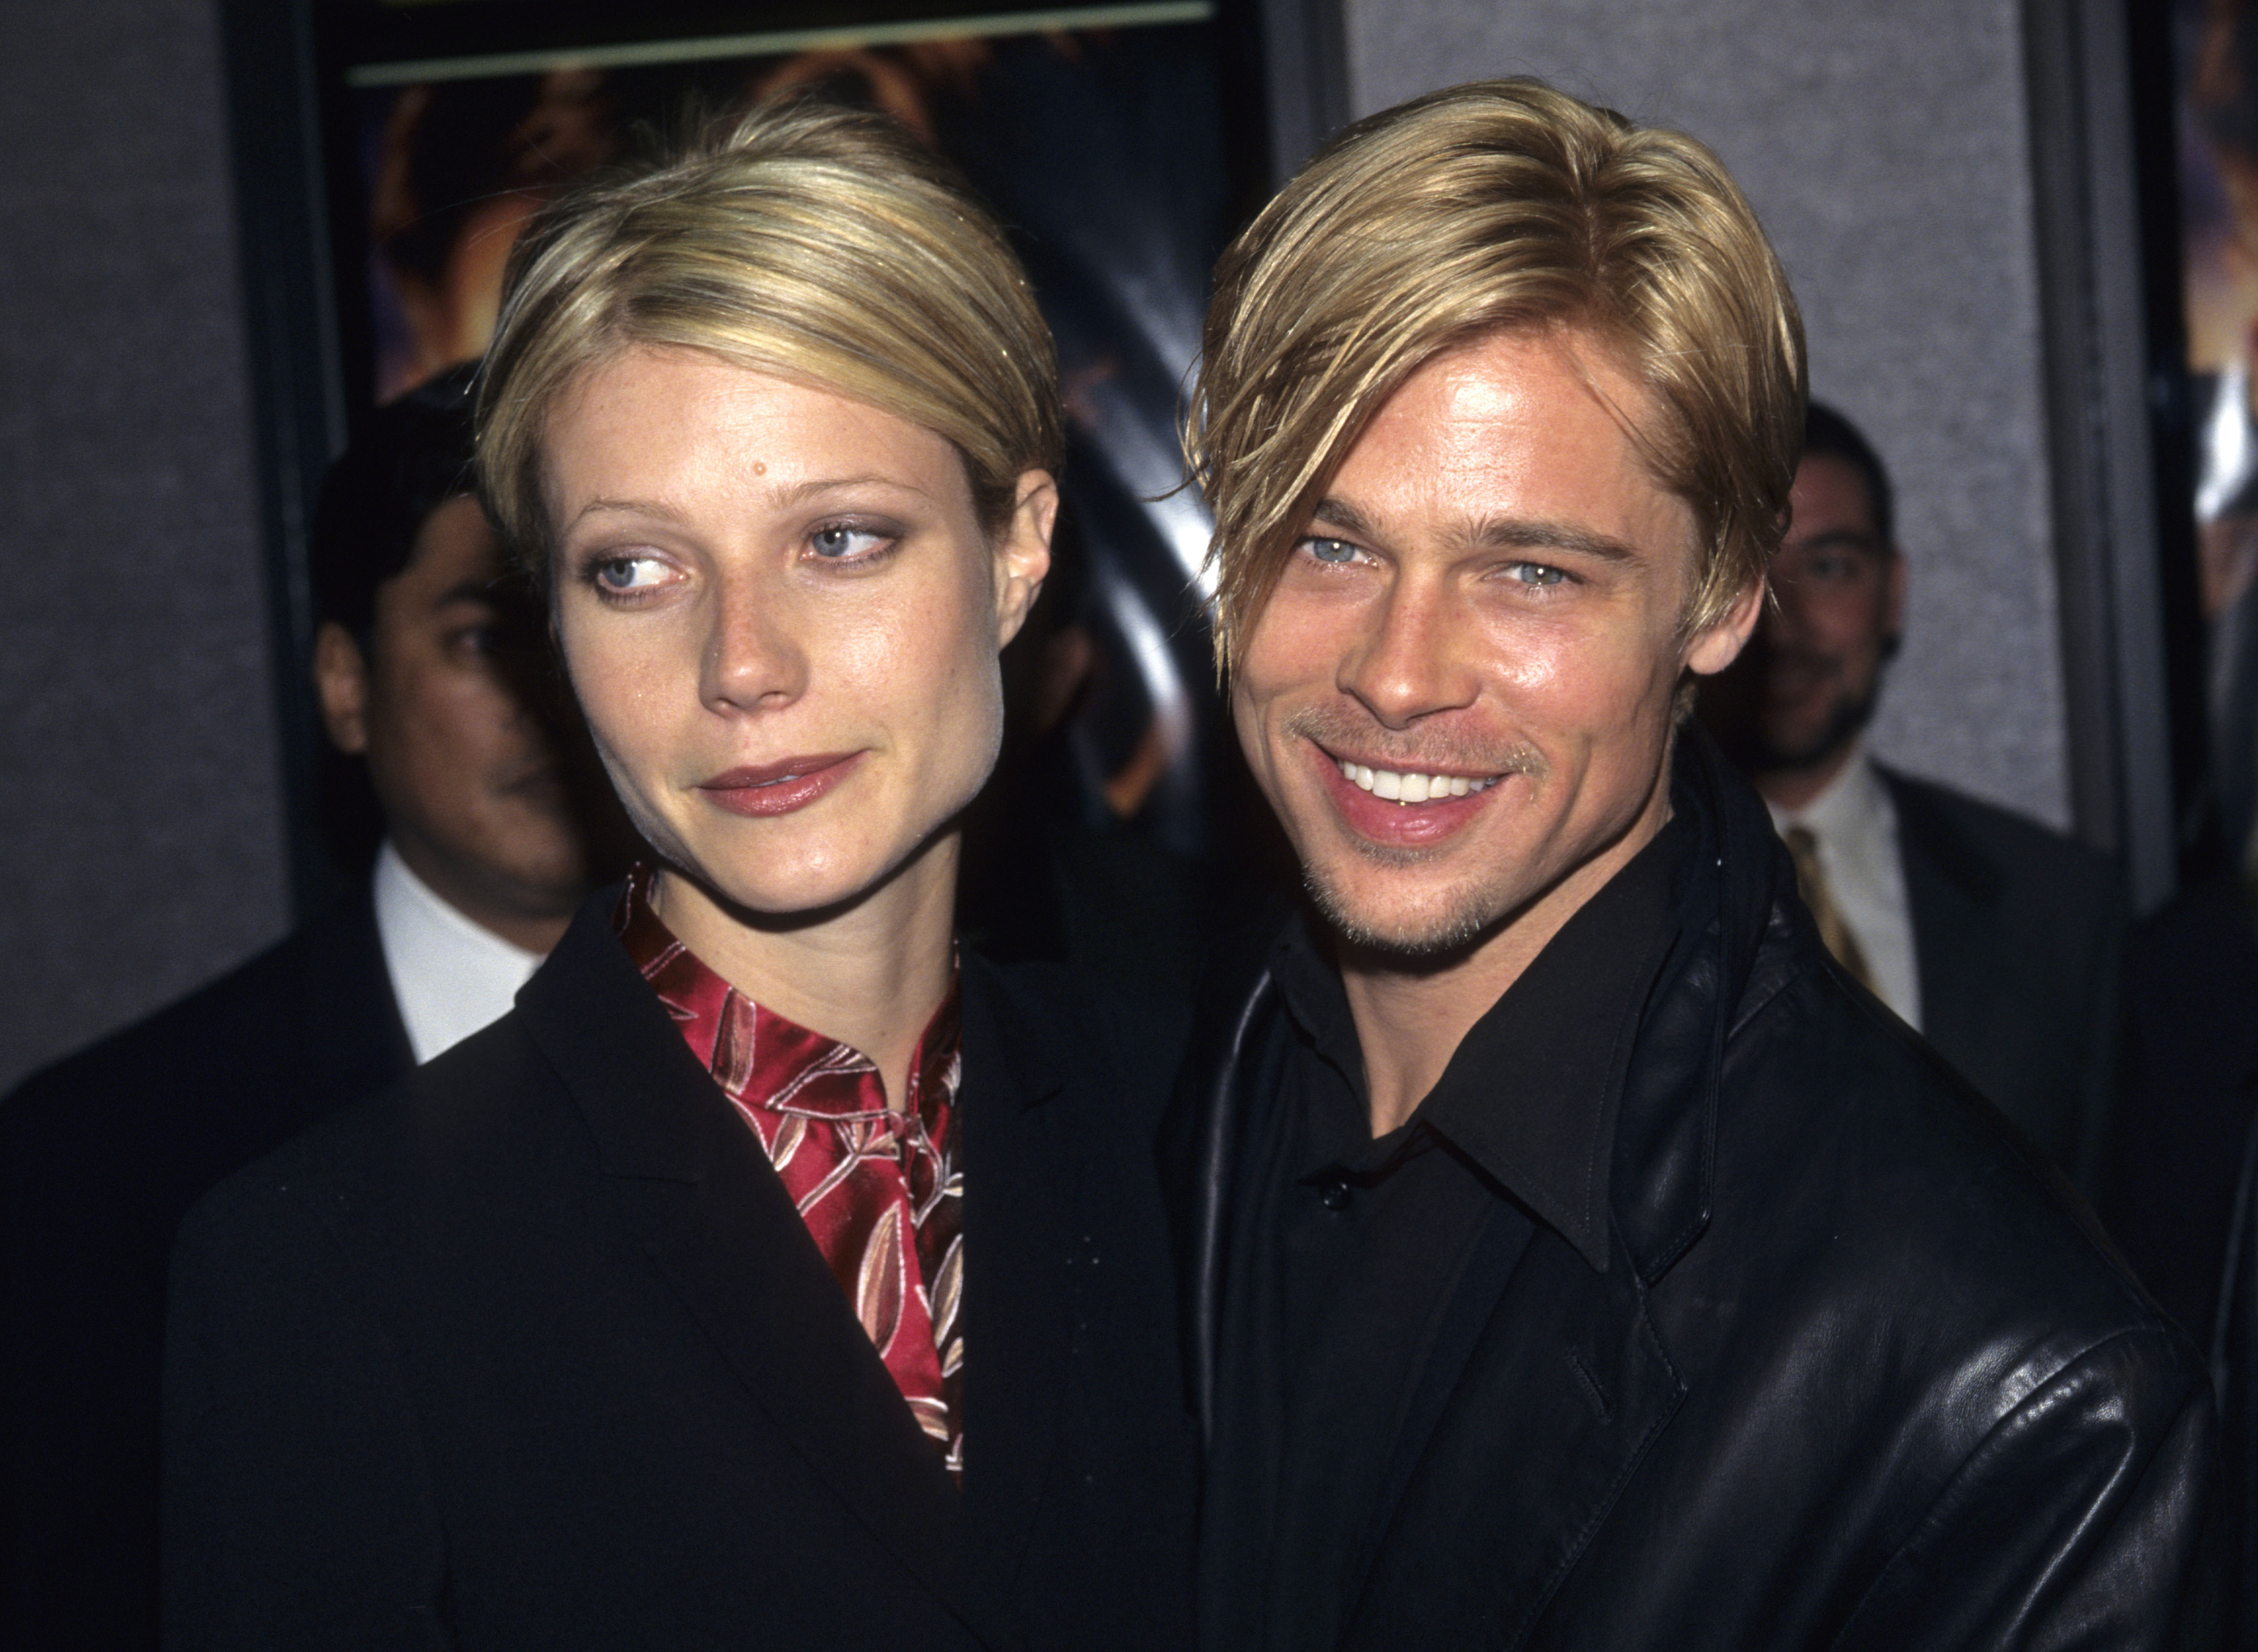 Gwyneth Paltrow et Brad Pitt à la première de "Ennemis rapprochés" le 13 mars 1997 | Source : Getty Images